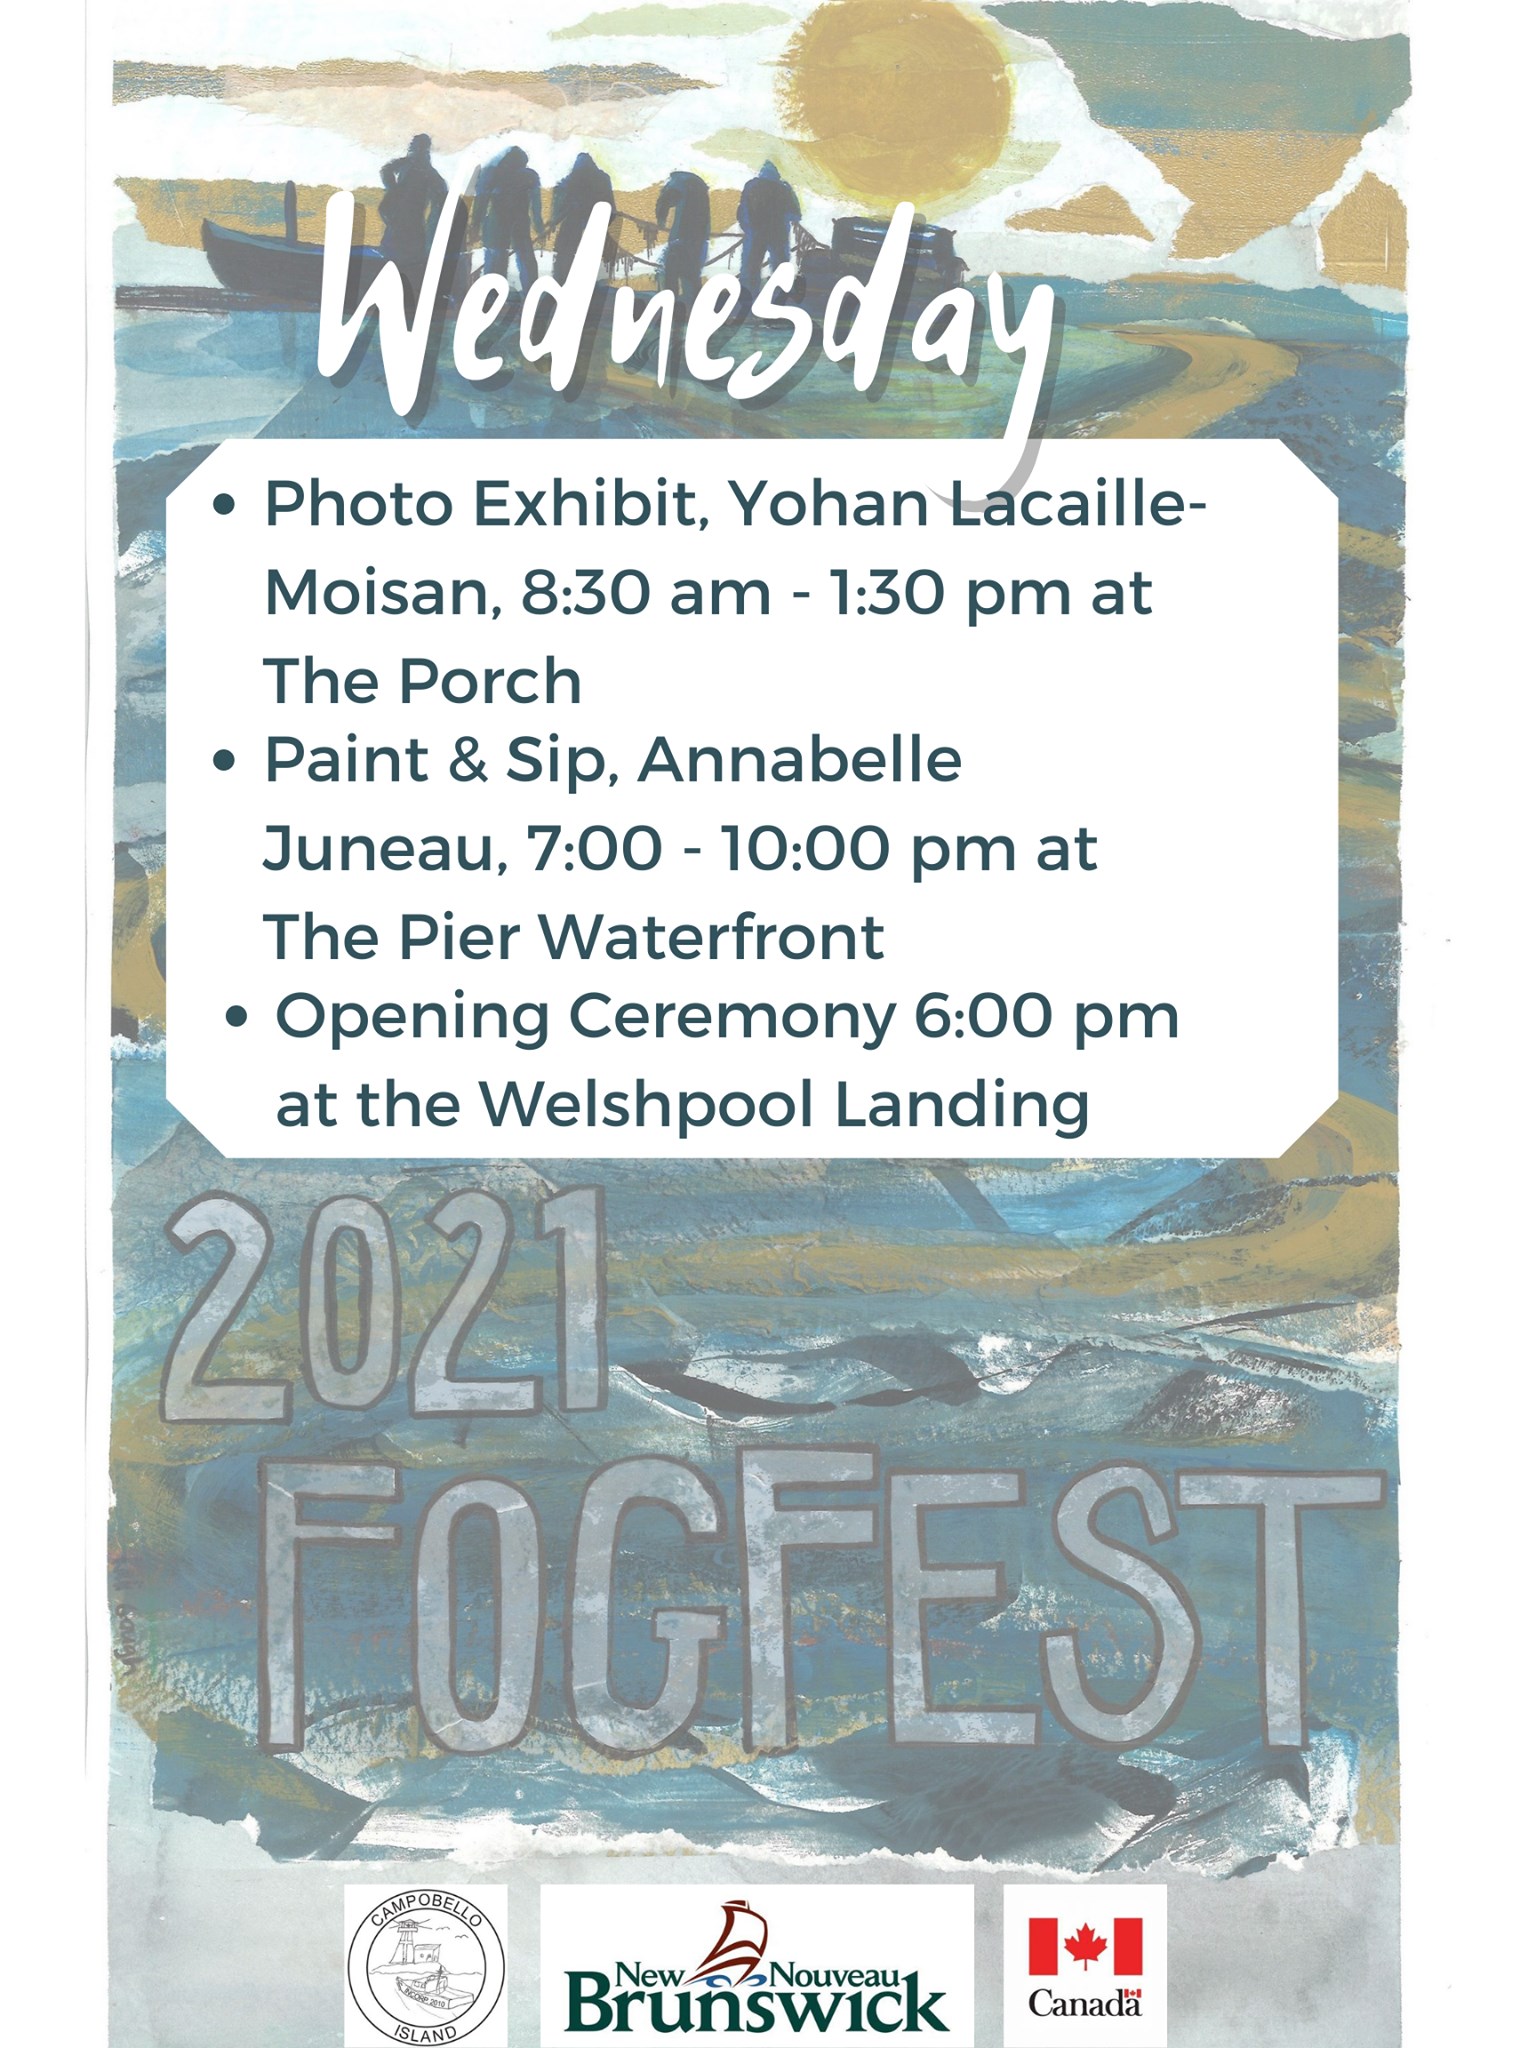 Fogfest - Wednesday